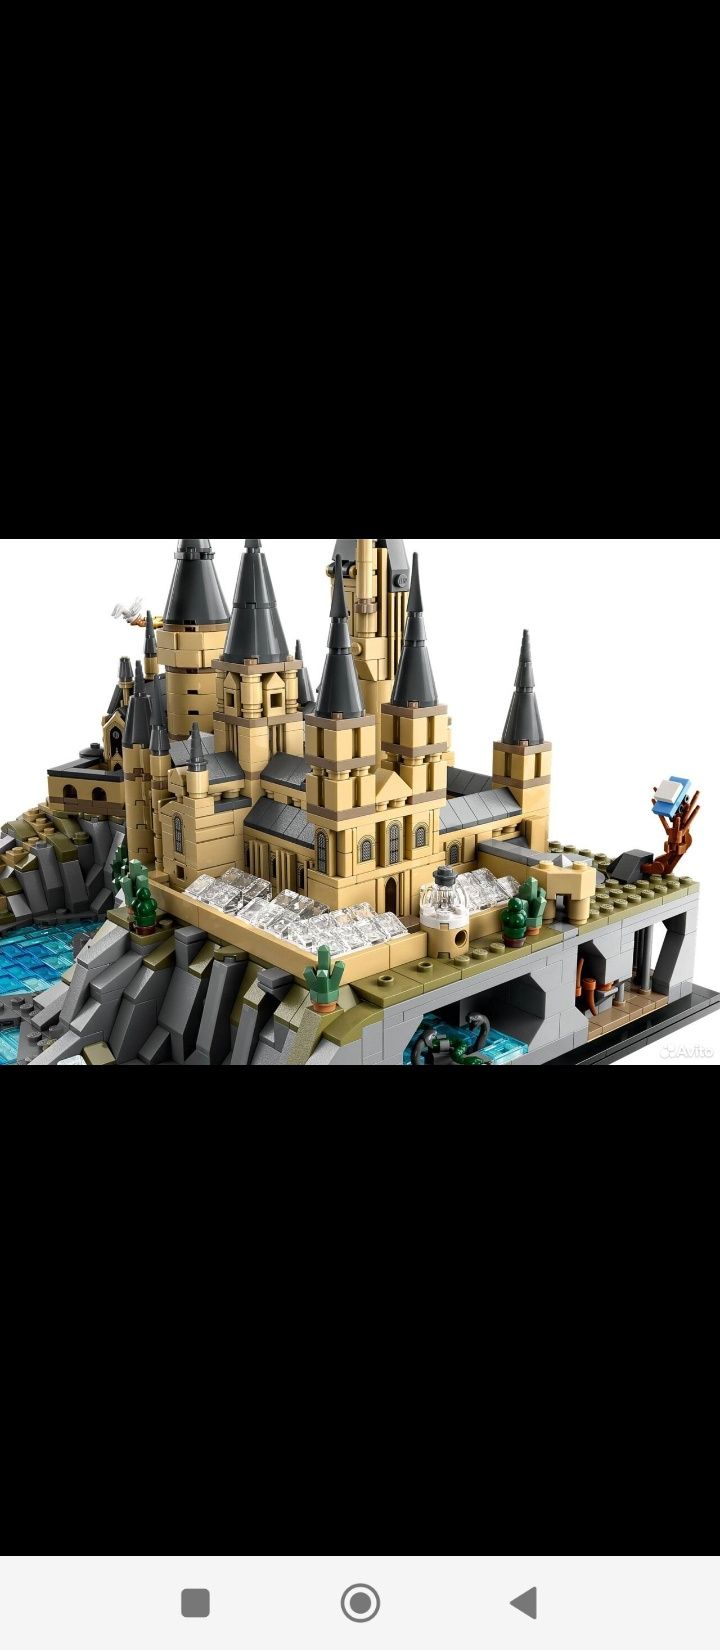 Set Lego HARRY POTTER / Castelo Hogwarts Sacavém E Prior Velho • OLX  Portugal